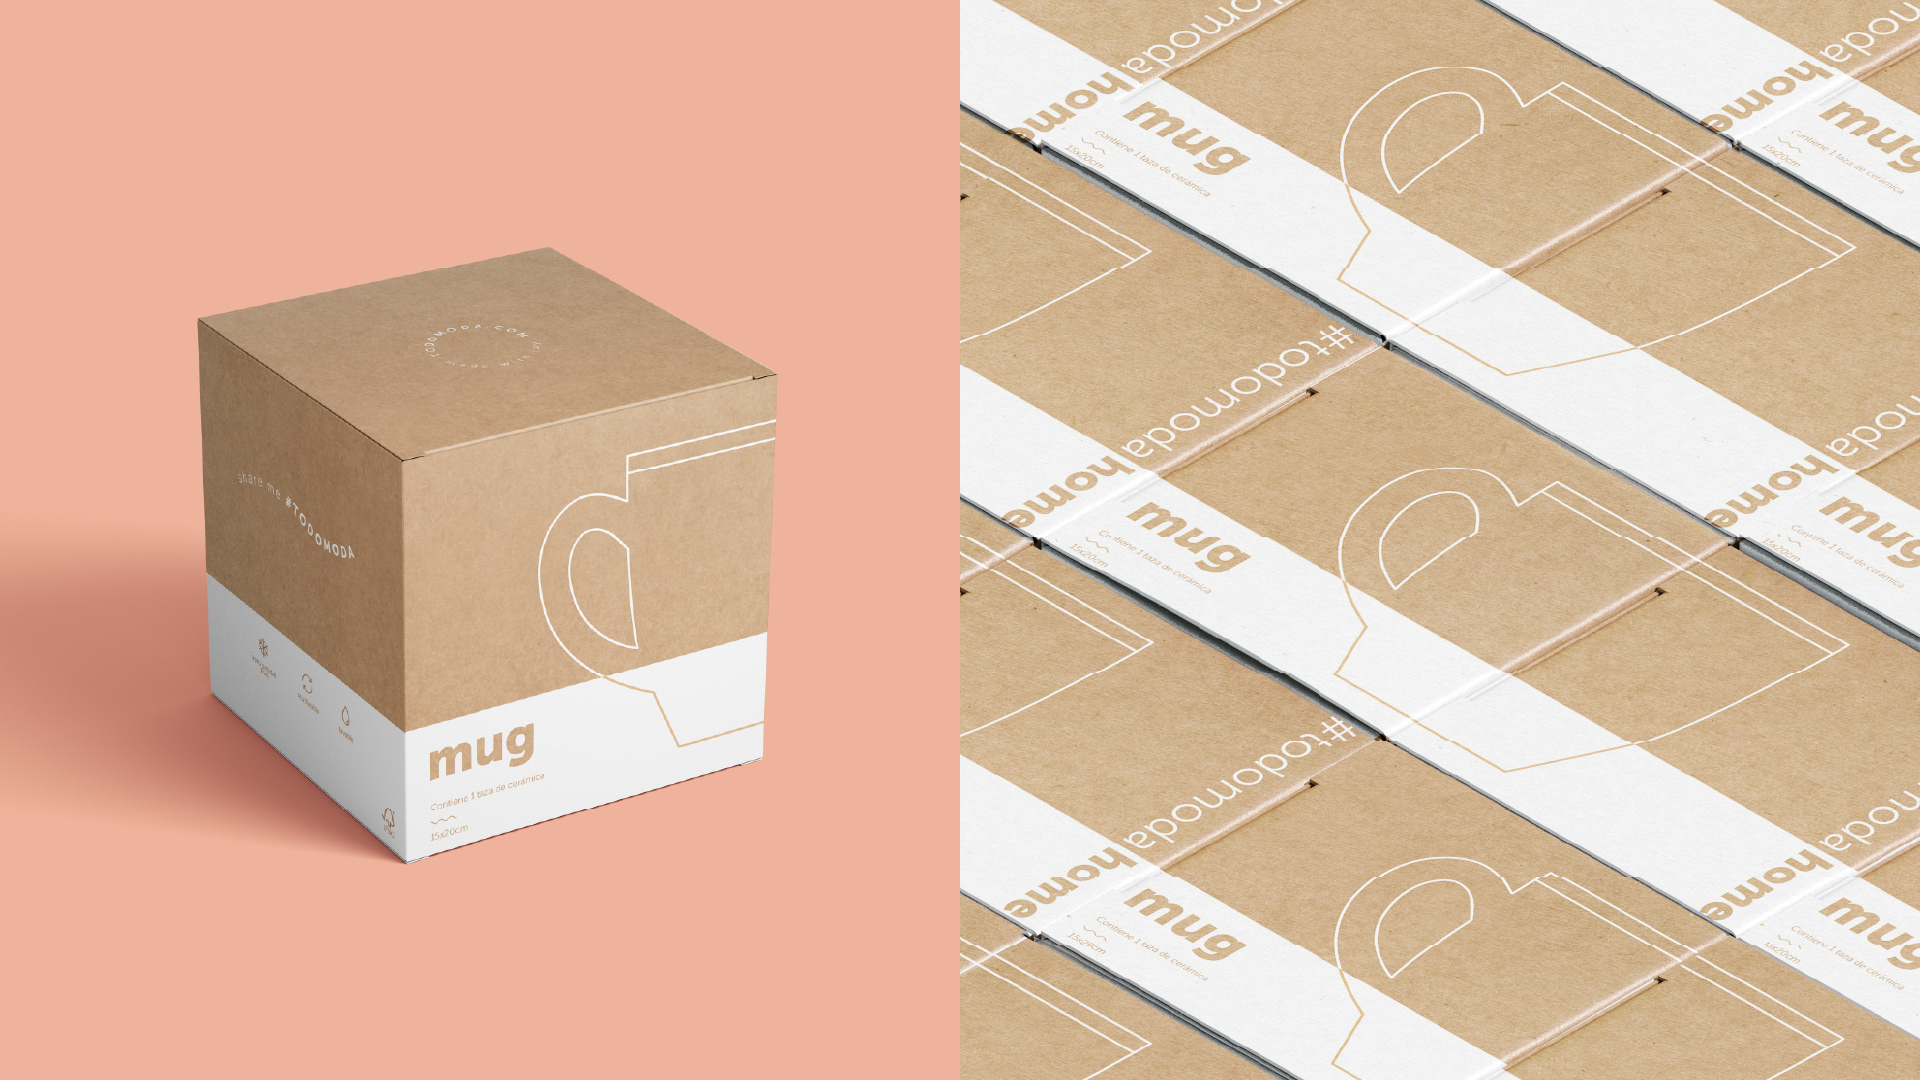 box packaging design for mugs